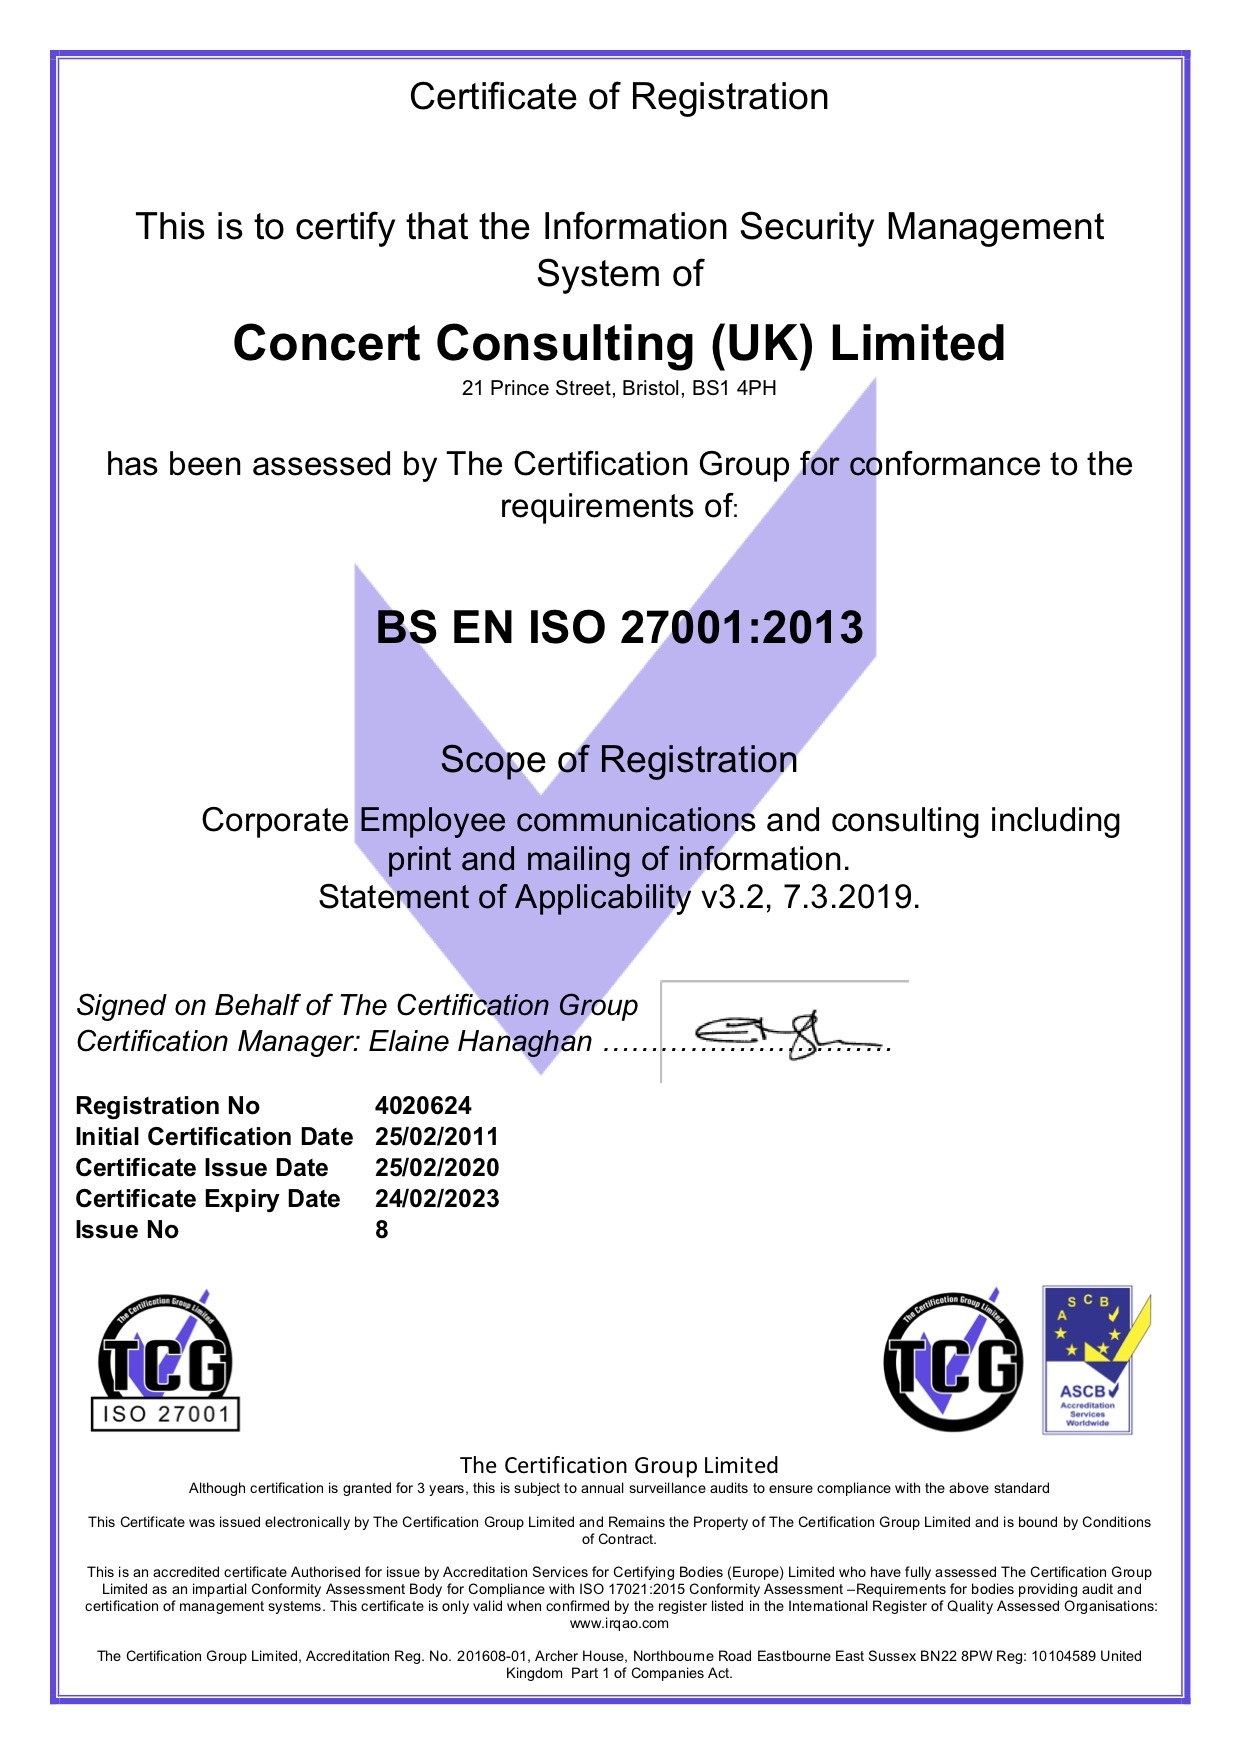 Concert ISO 27001 Certificate